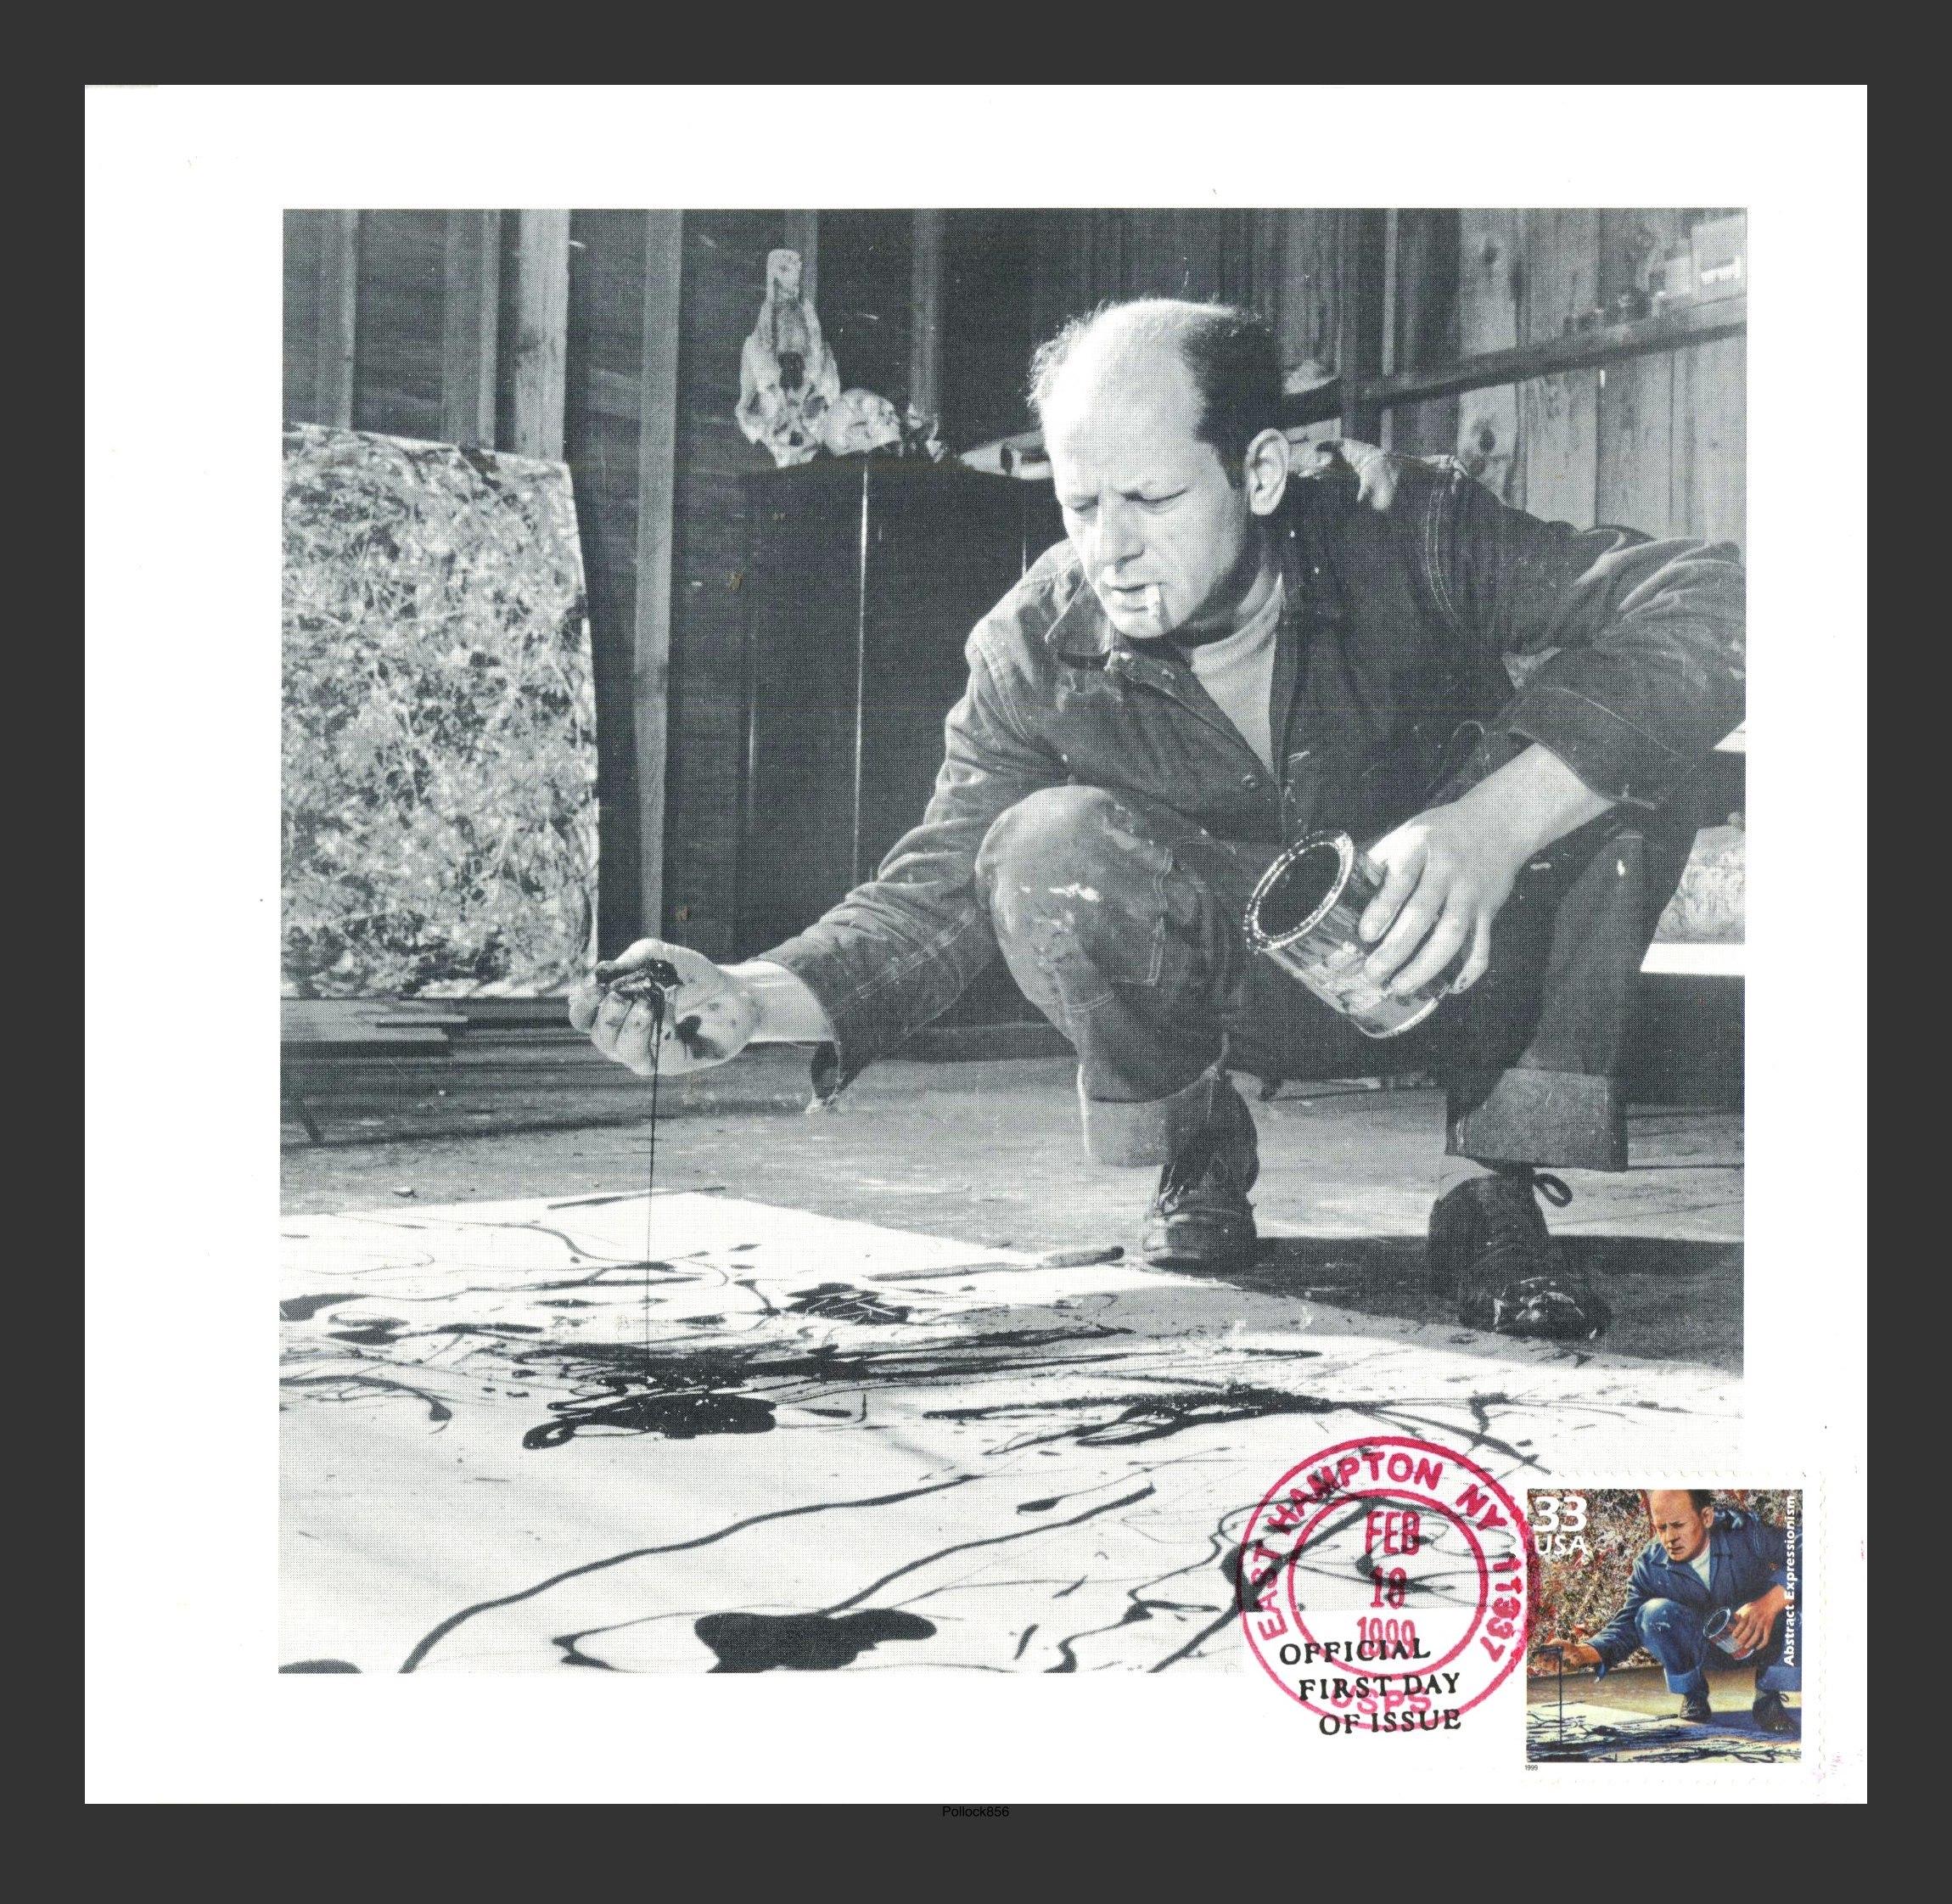 Jackson Pollock
Invitation exclusive avec enveloppe premier jour, 1999
Invitation dépliante en lithographie offset avec enveloppe premier jour oblitérée
Timbre avec oblitération officielle de l'US Post Office, daté avec une ligne de temps de